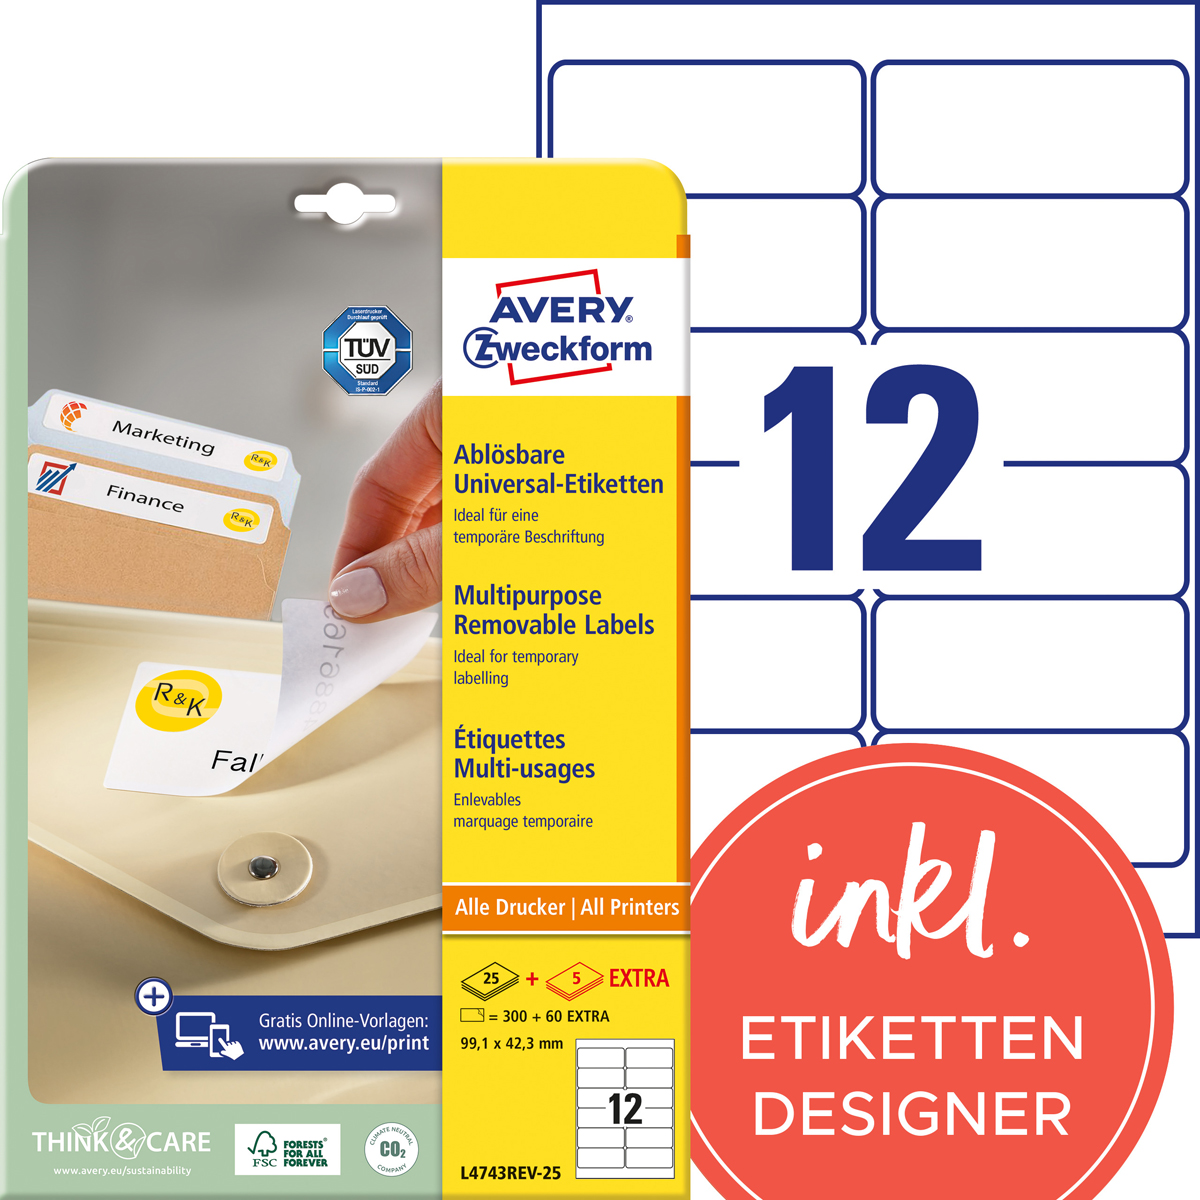 Avery Zweckform L4743REV-25 Universal-Etiketten, 99,1 x 42,3 mm, 30 Bogen/360 Etiketten, weiß